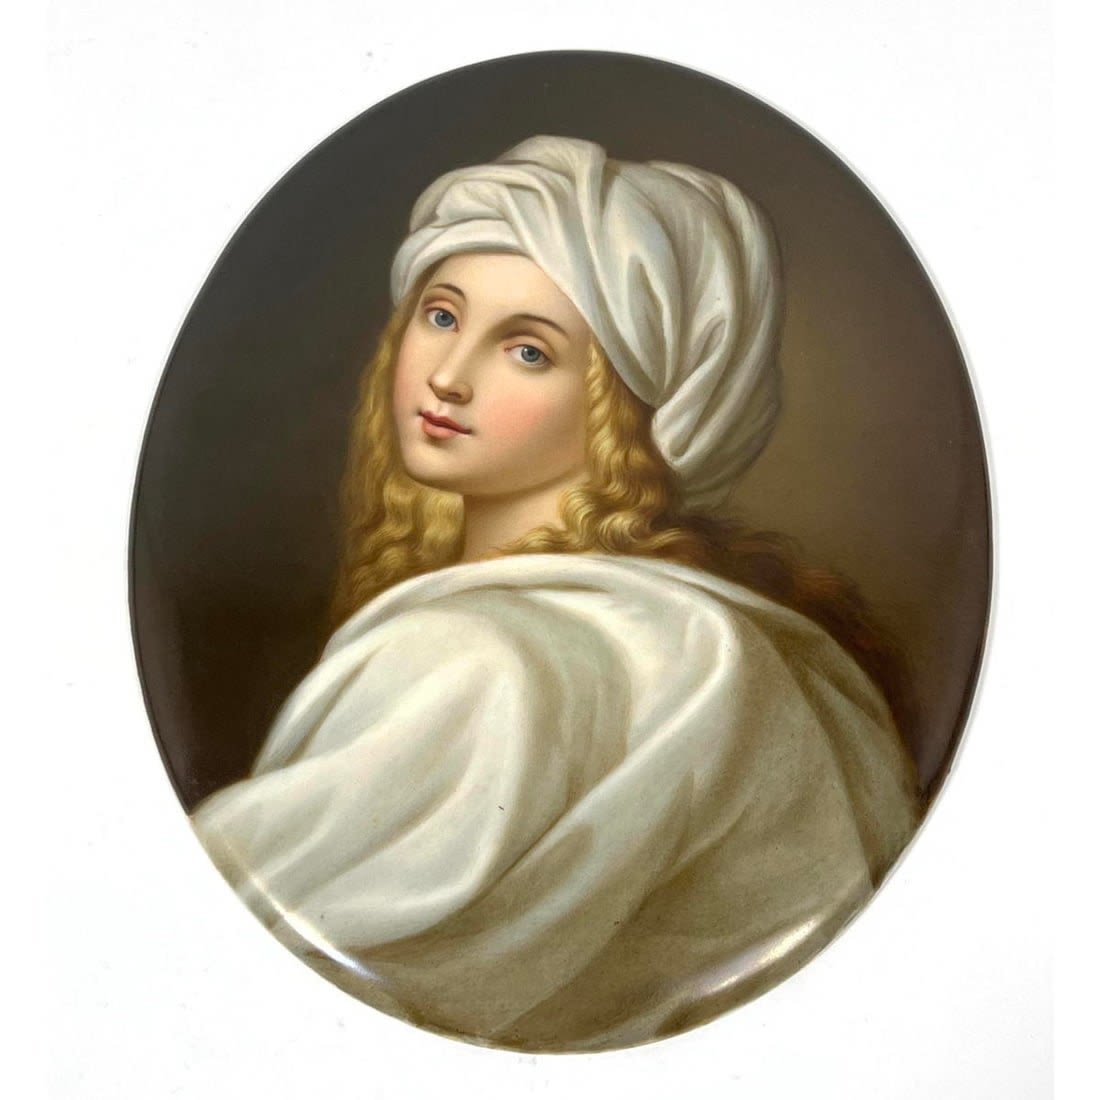 KPM Plaque portrait of blond woman